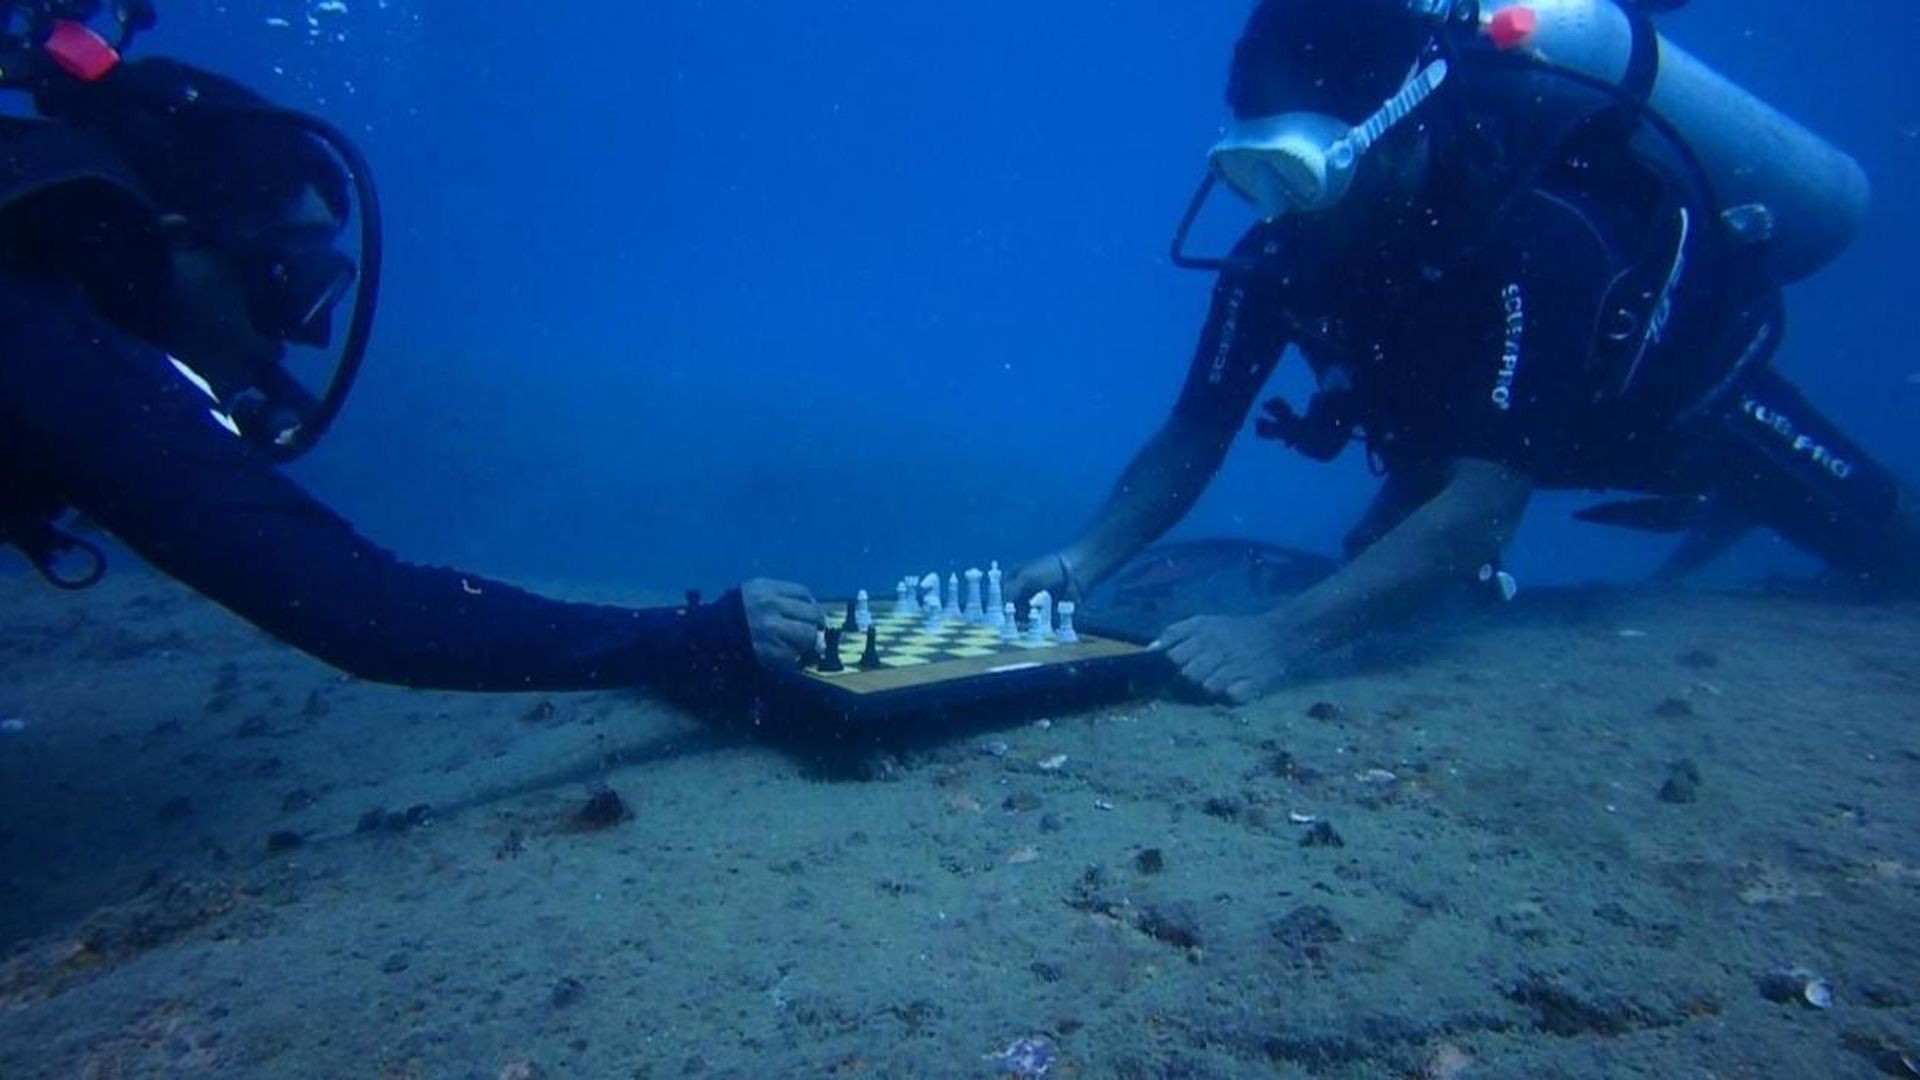 Underwater chess